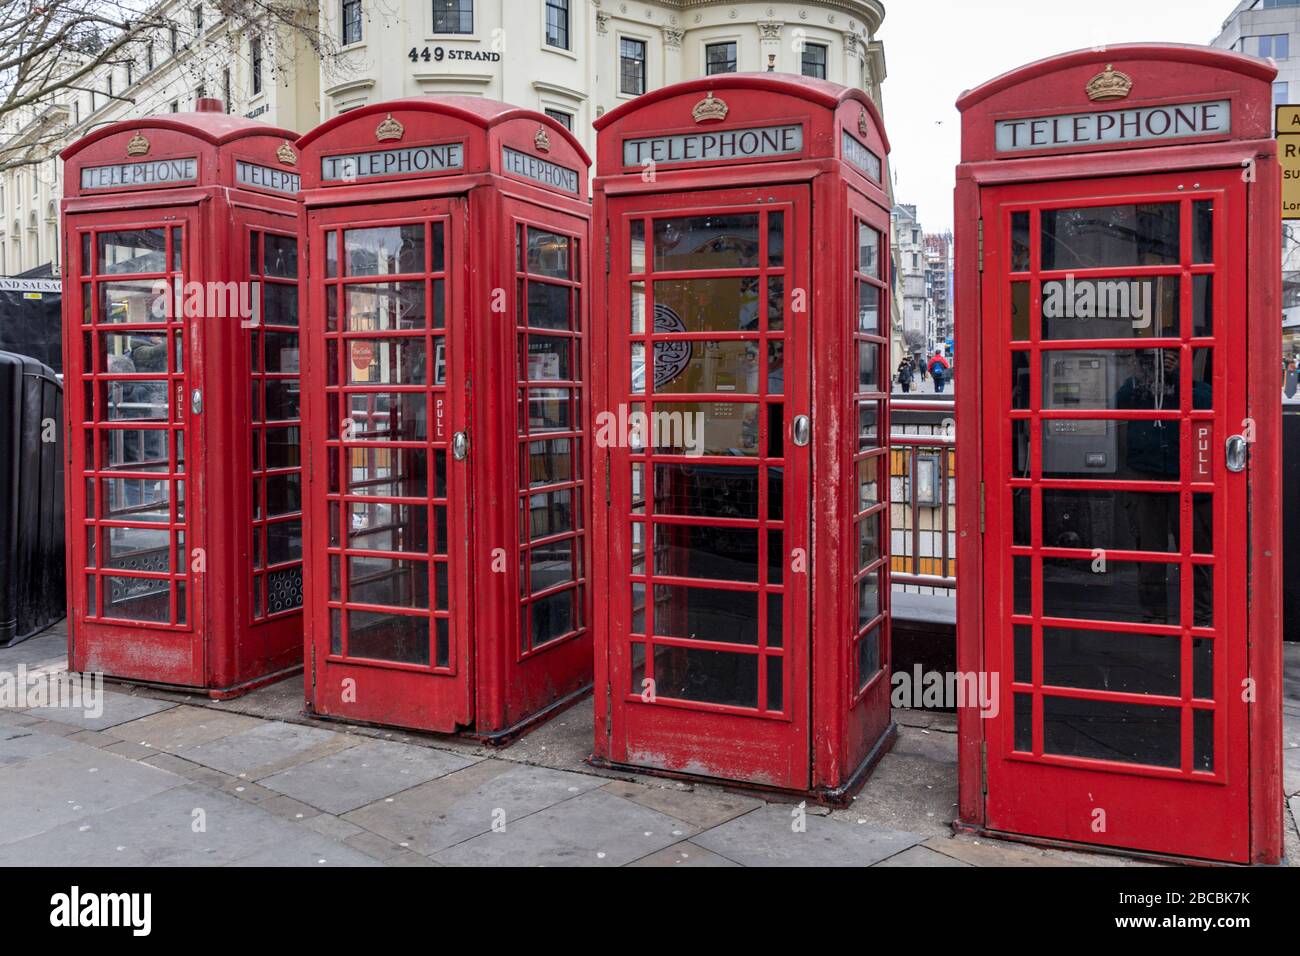 Quatre boîtes téléphoniques rouges traditionnelles et patrimoniales se trouvent à la rangée du Strand, Londres, Angleterre, Royaume-Uni, en face de la Charing Cross Station. Banque D'Images